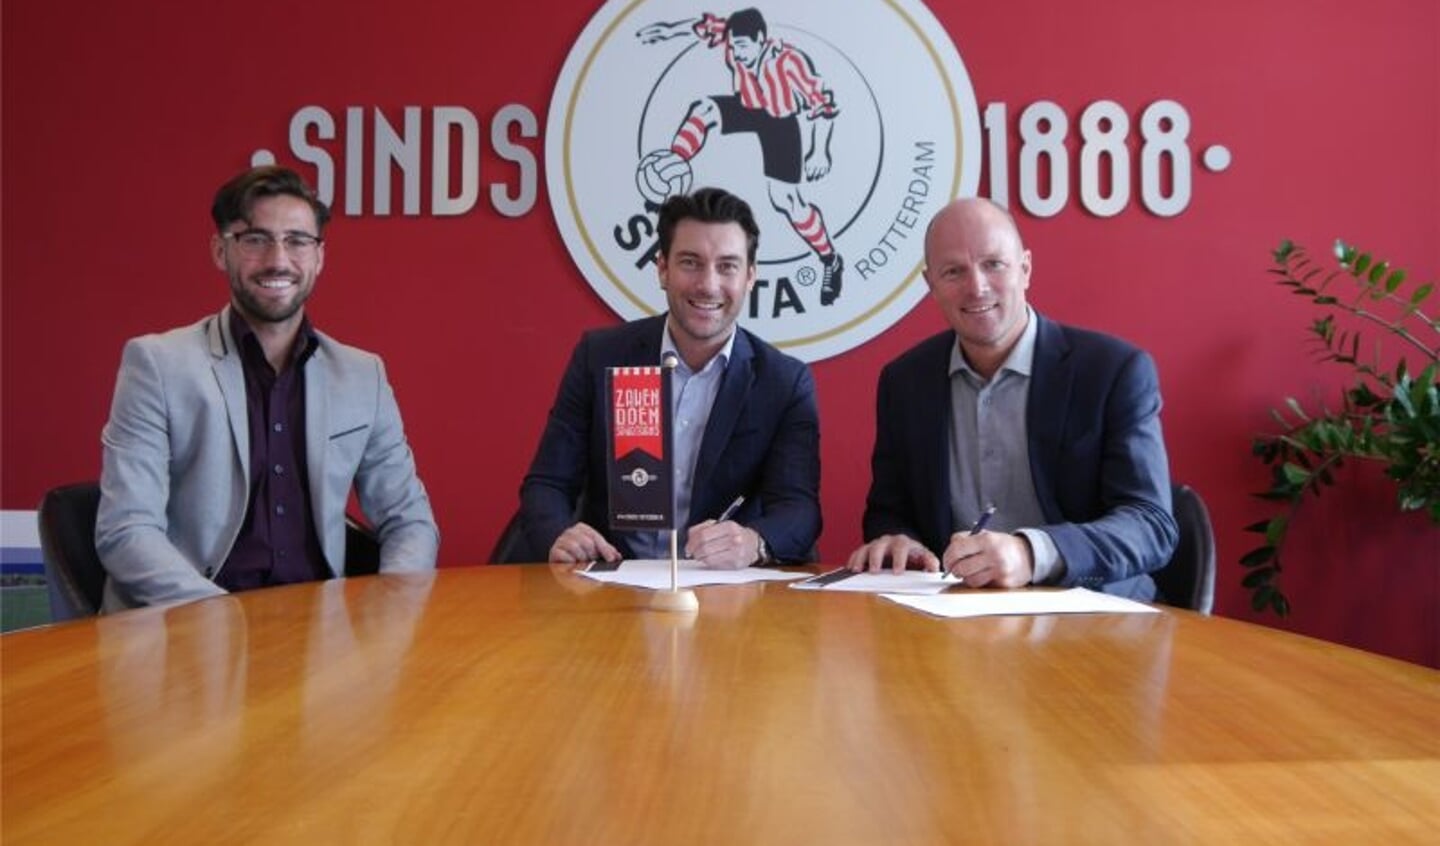 Rick de Vroom heeft namens West Media een mediapartner overeenkomst getekend met Dave van der Meer (rechts) en Kick Kerklaan (links) van Sparta Rotterdam.